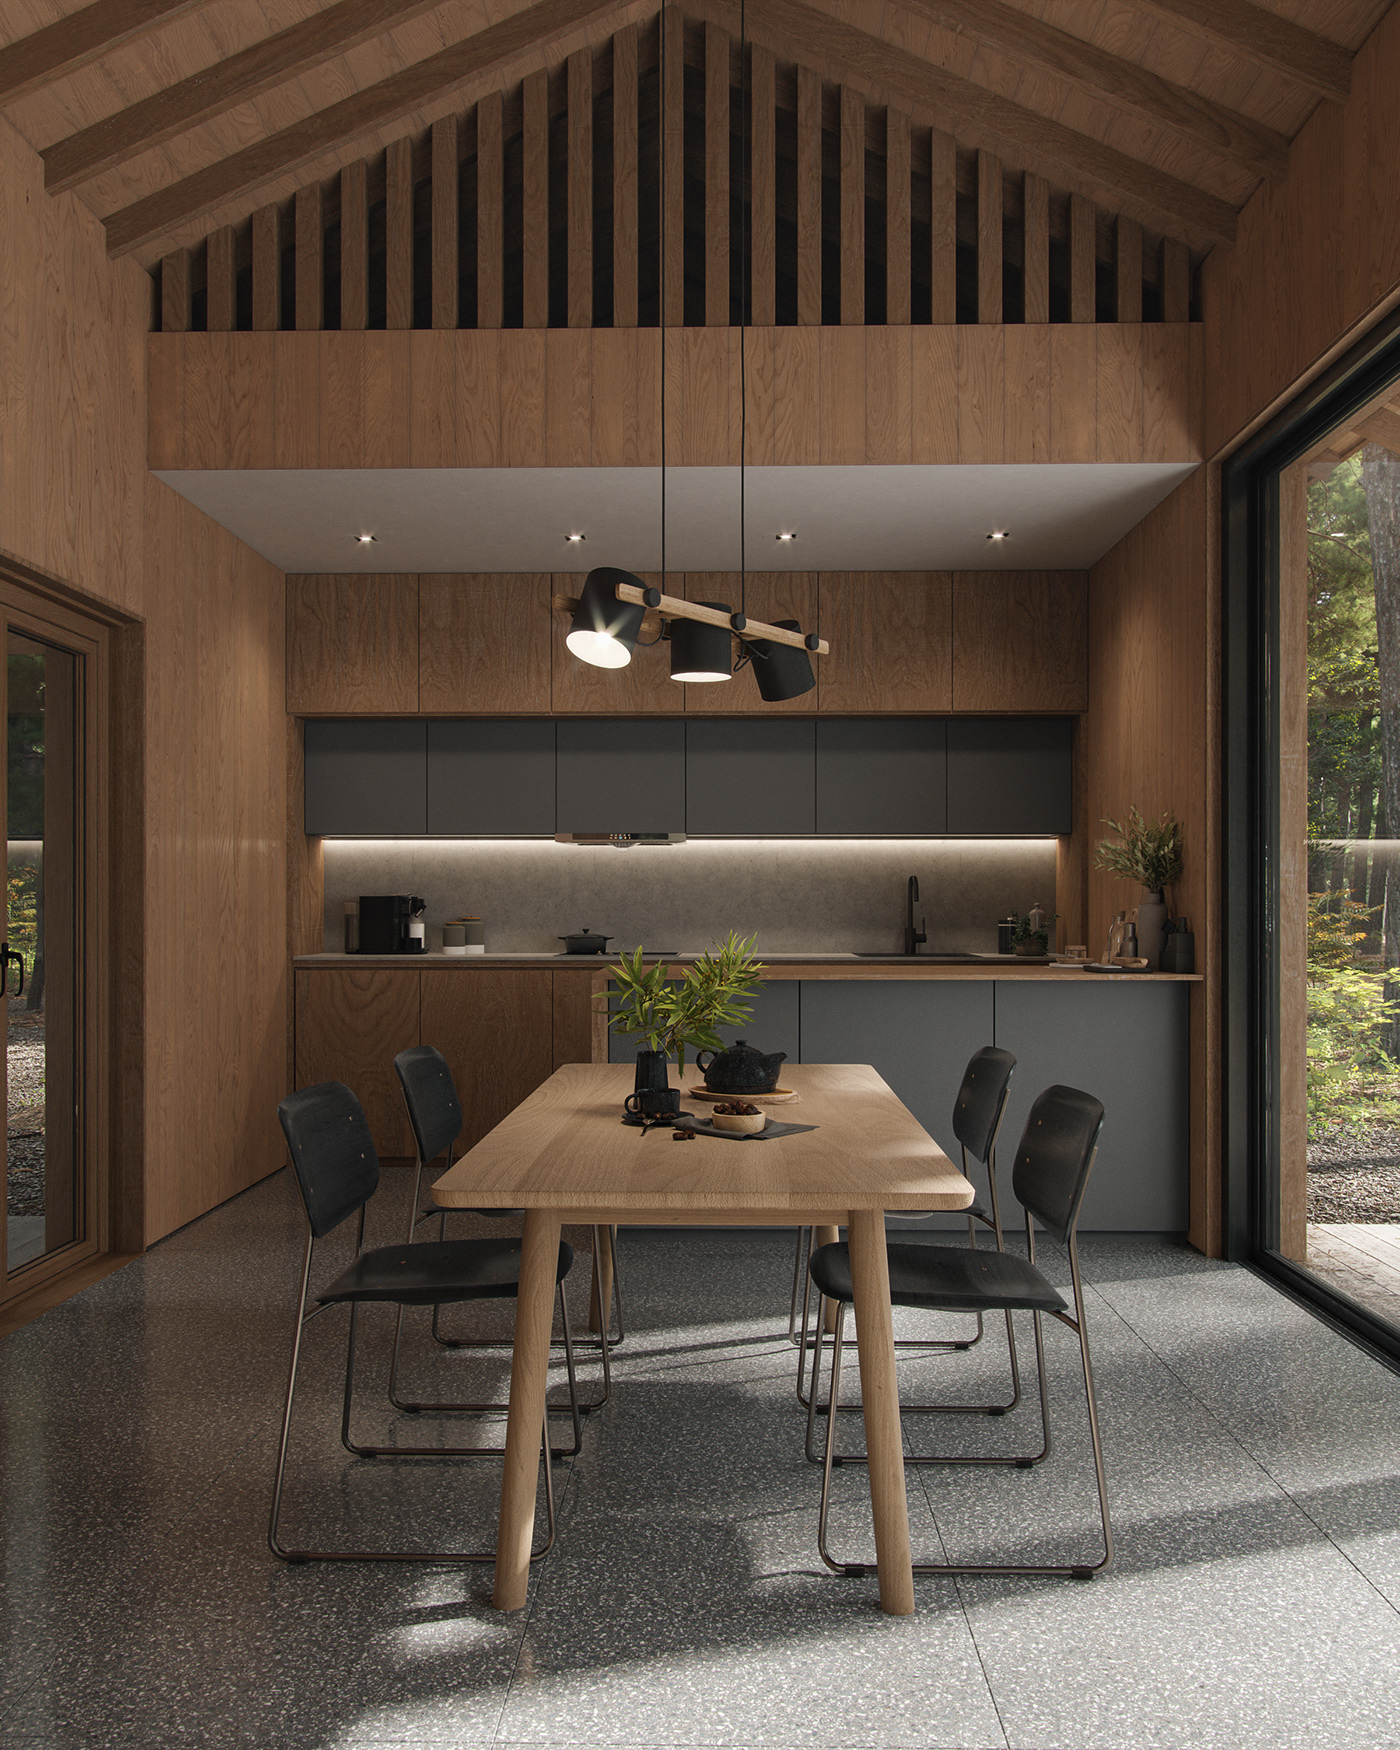 3ds max architecture cabin corona render  corona renderer forest Interior Landscape CGI visualization